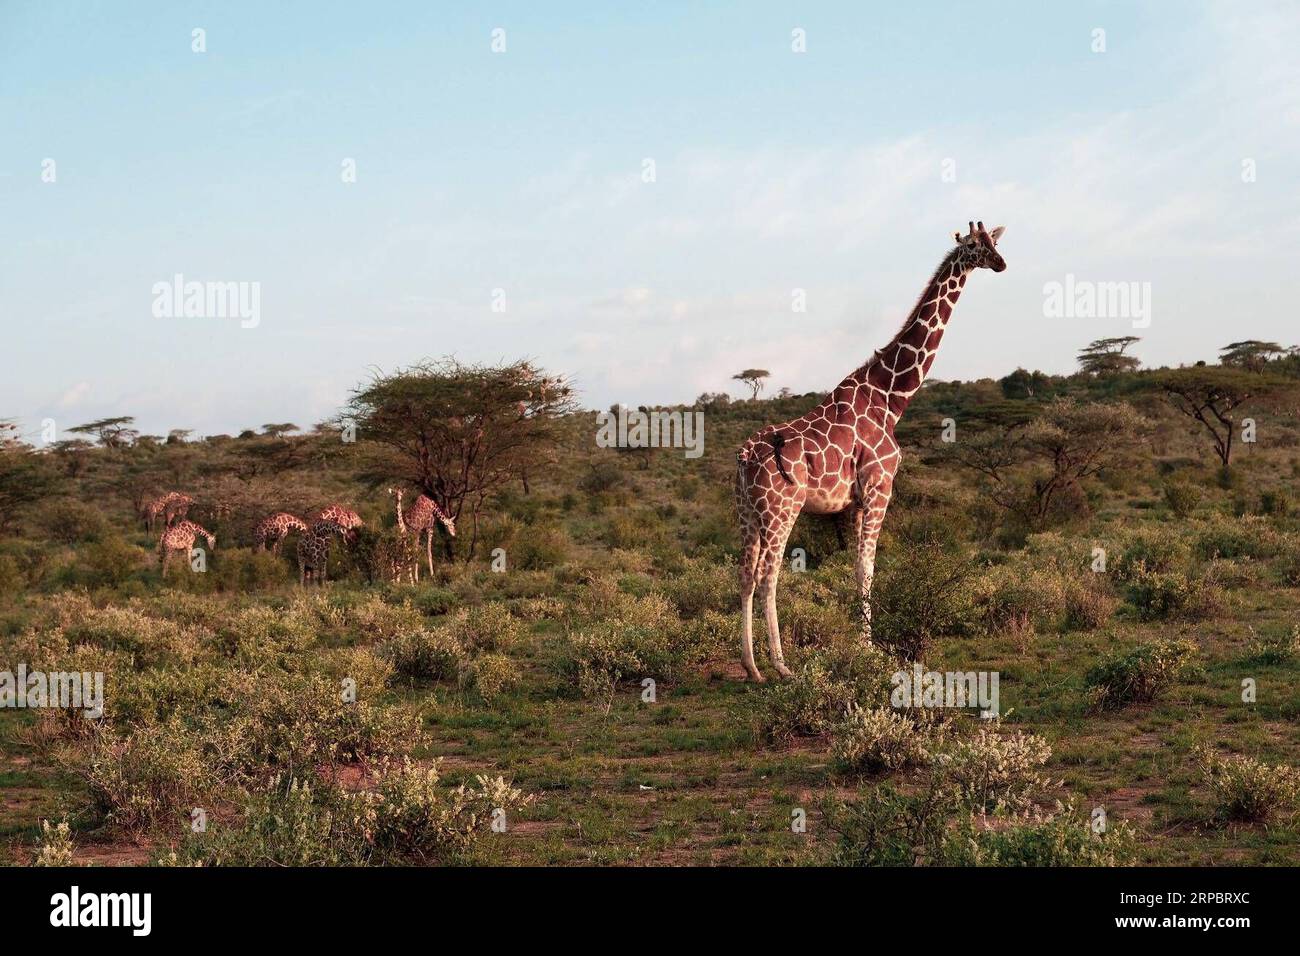 (190615) -- NAIROBI, 15 giugno 2019 (Xinhua) -- le giraffe passano accanto agli alberi al tramonto nella riserva nazionale di Samburu, a nord del Kenya, 13 giugno 2019. La riserva nazionale di Samburu si trova nel nord del Kenya e copre un'area di circa 165 chilometri quadrati. Attrae gli animali a causa del fiume Ewaso ng iro che lo attraversa e della miscela di acacia, foresta fluviale, alberi di spine e vegetazione erbosa. La zebra di Grevy, il gerenuk, le giraffe reticolate e l'orice beisa sono più di quelle di altre regioni del paese. La riserva ospita anche leoni, coccodrilli, babbuini, elefanti Foto Stock